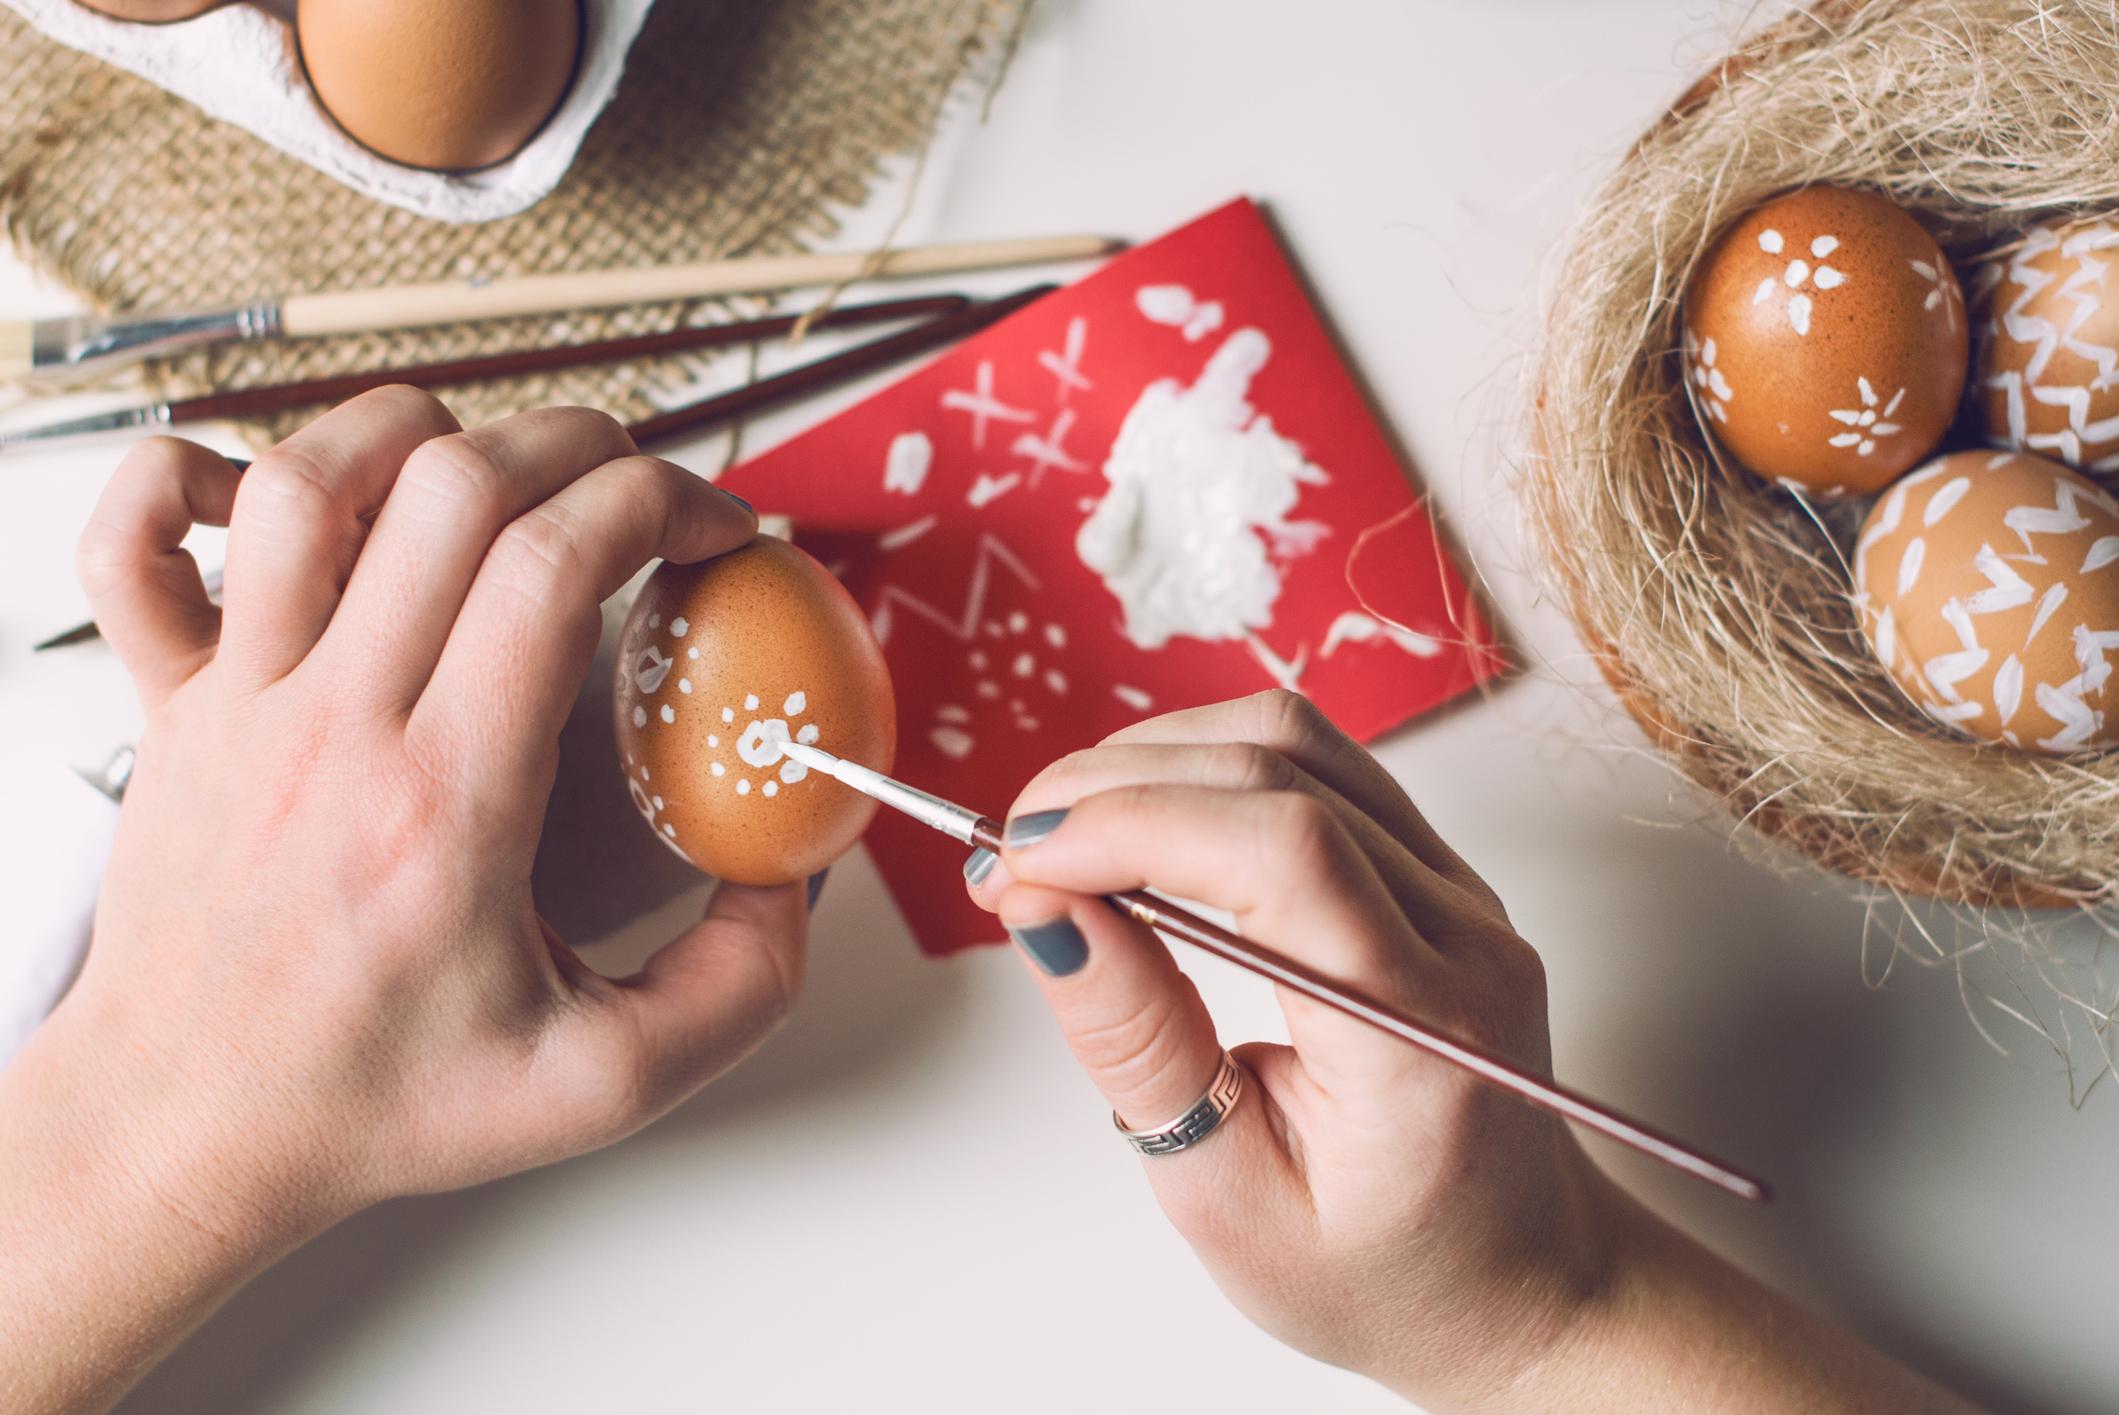 Mulher pintando casca do ovo